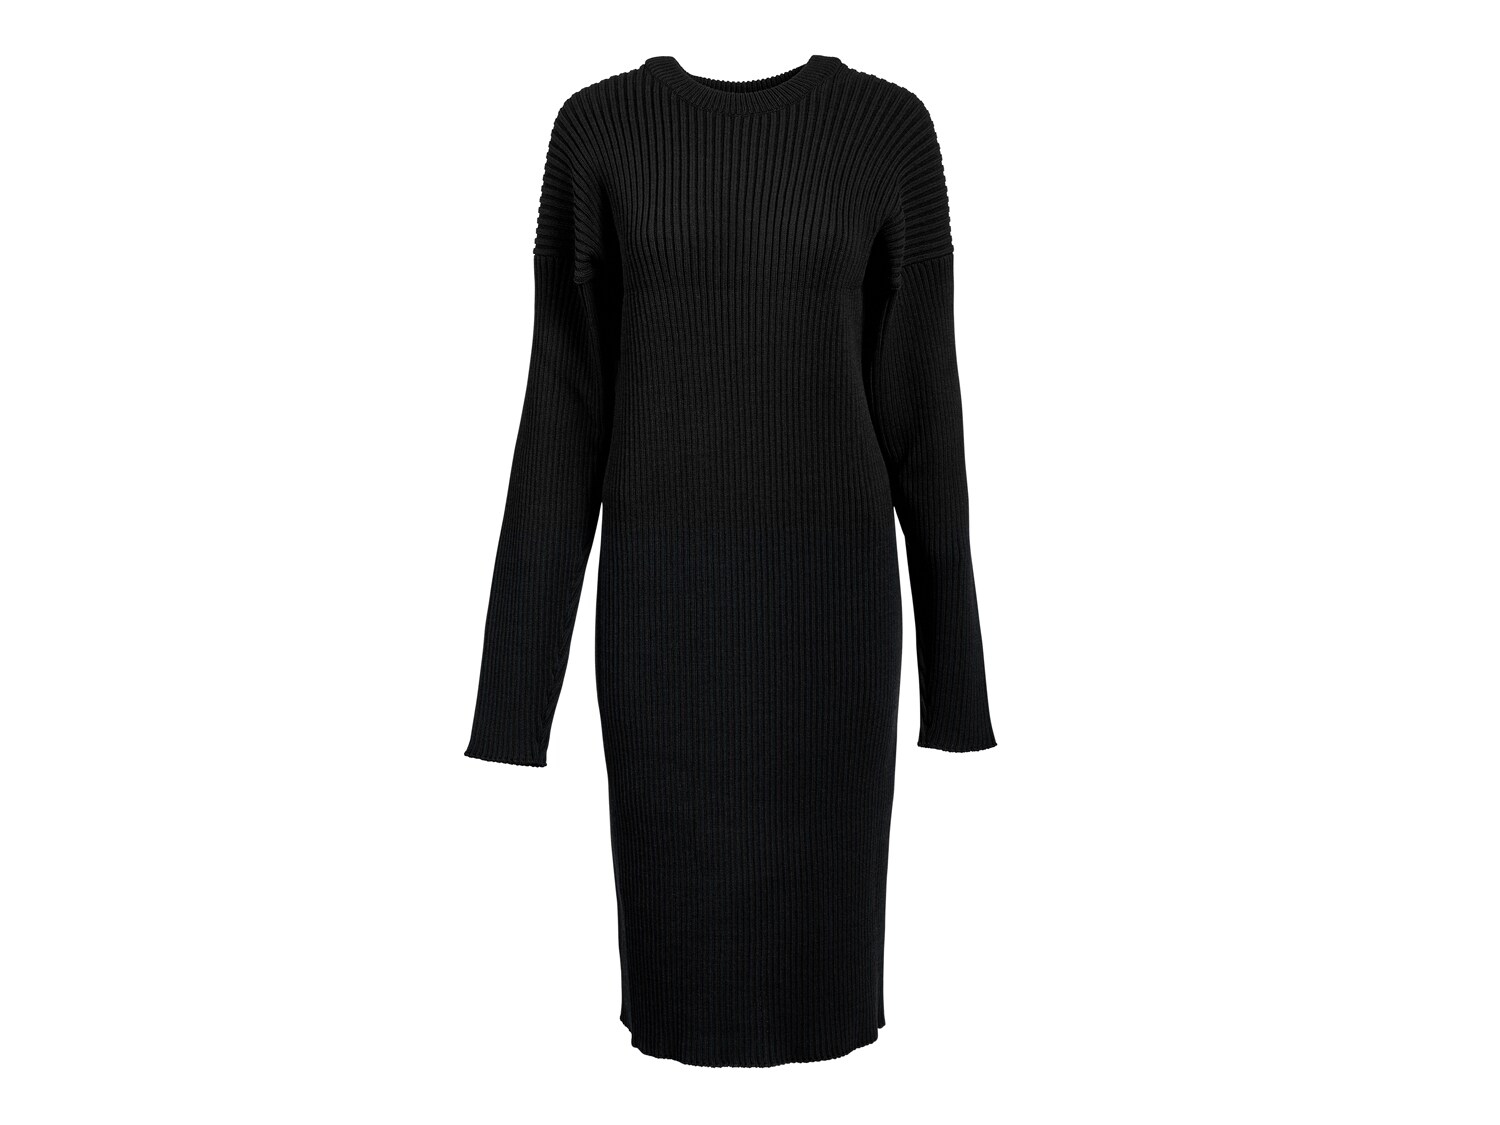 Bottega Veneta Merino Women's Long Sleeve Dress - Free Shipping | DSW